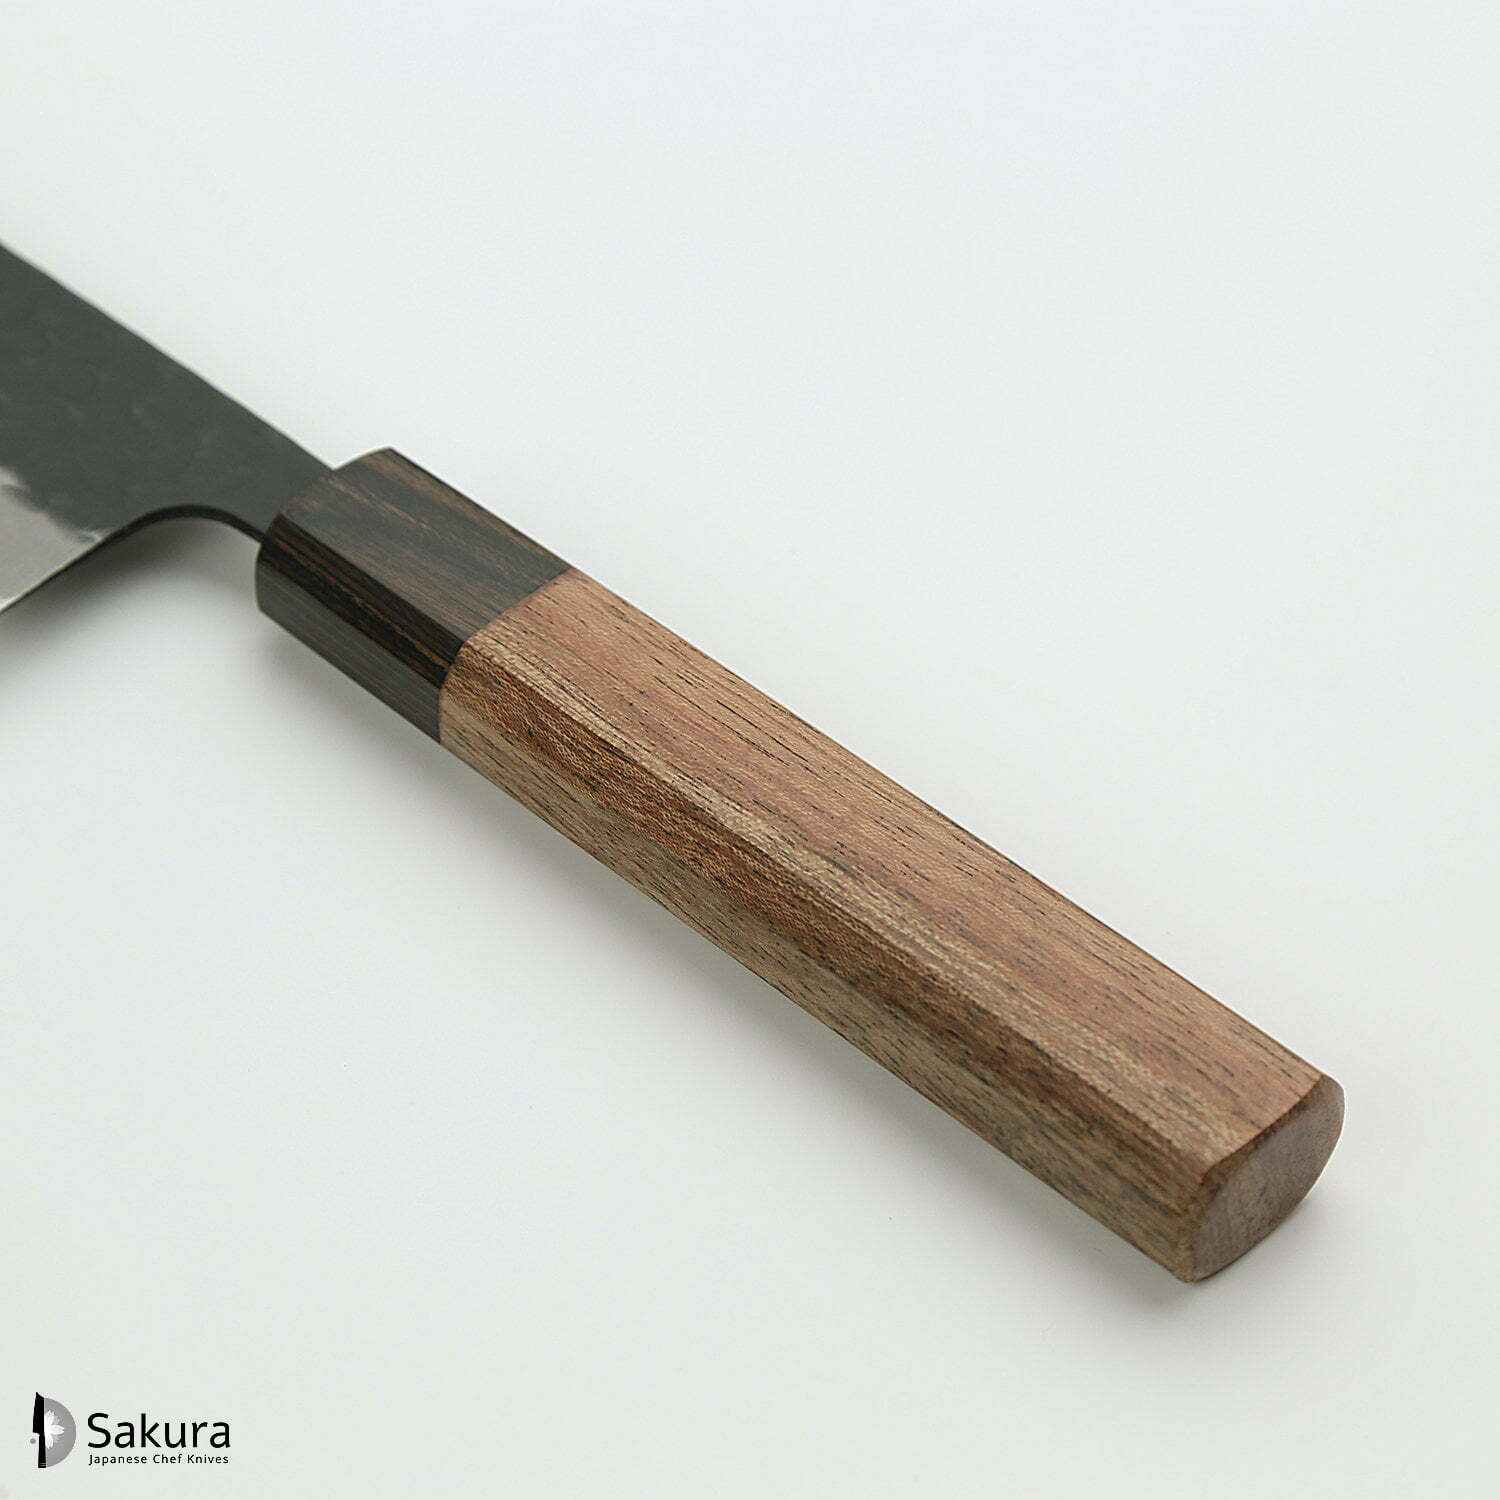 סכין רב-תכליתית בּוּנְקָה 155מ״מ מחוזקת 3 שכבות: פלדת פחמן יפנית מתקדמת מסוג Aogami Super עטופה פלדת אל-חלד גימור קורואיצ׳י שחור עם ריקוע פטיש ג׳יקו סאקאיי יפן